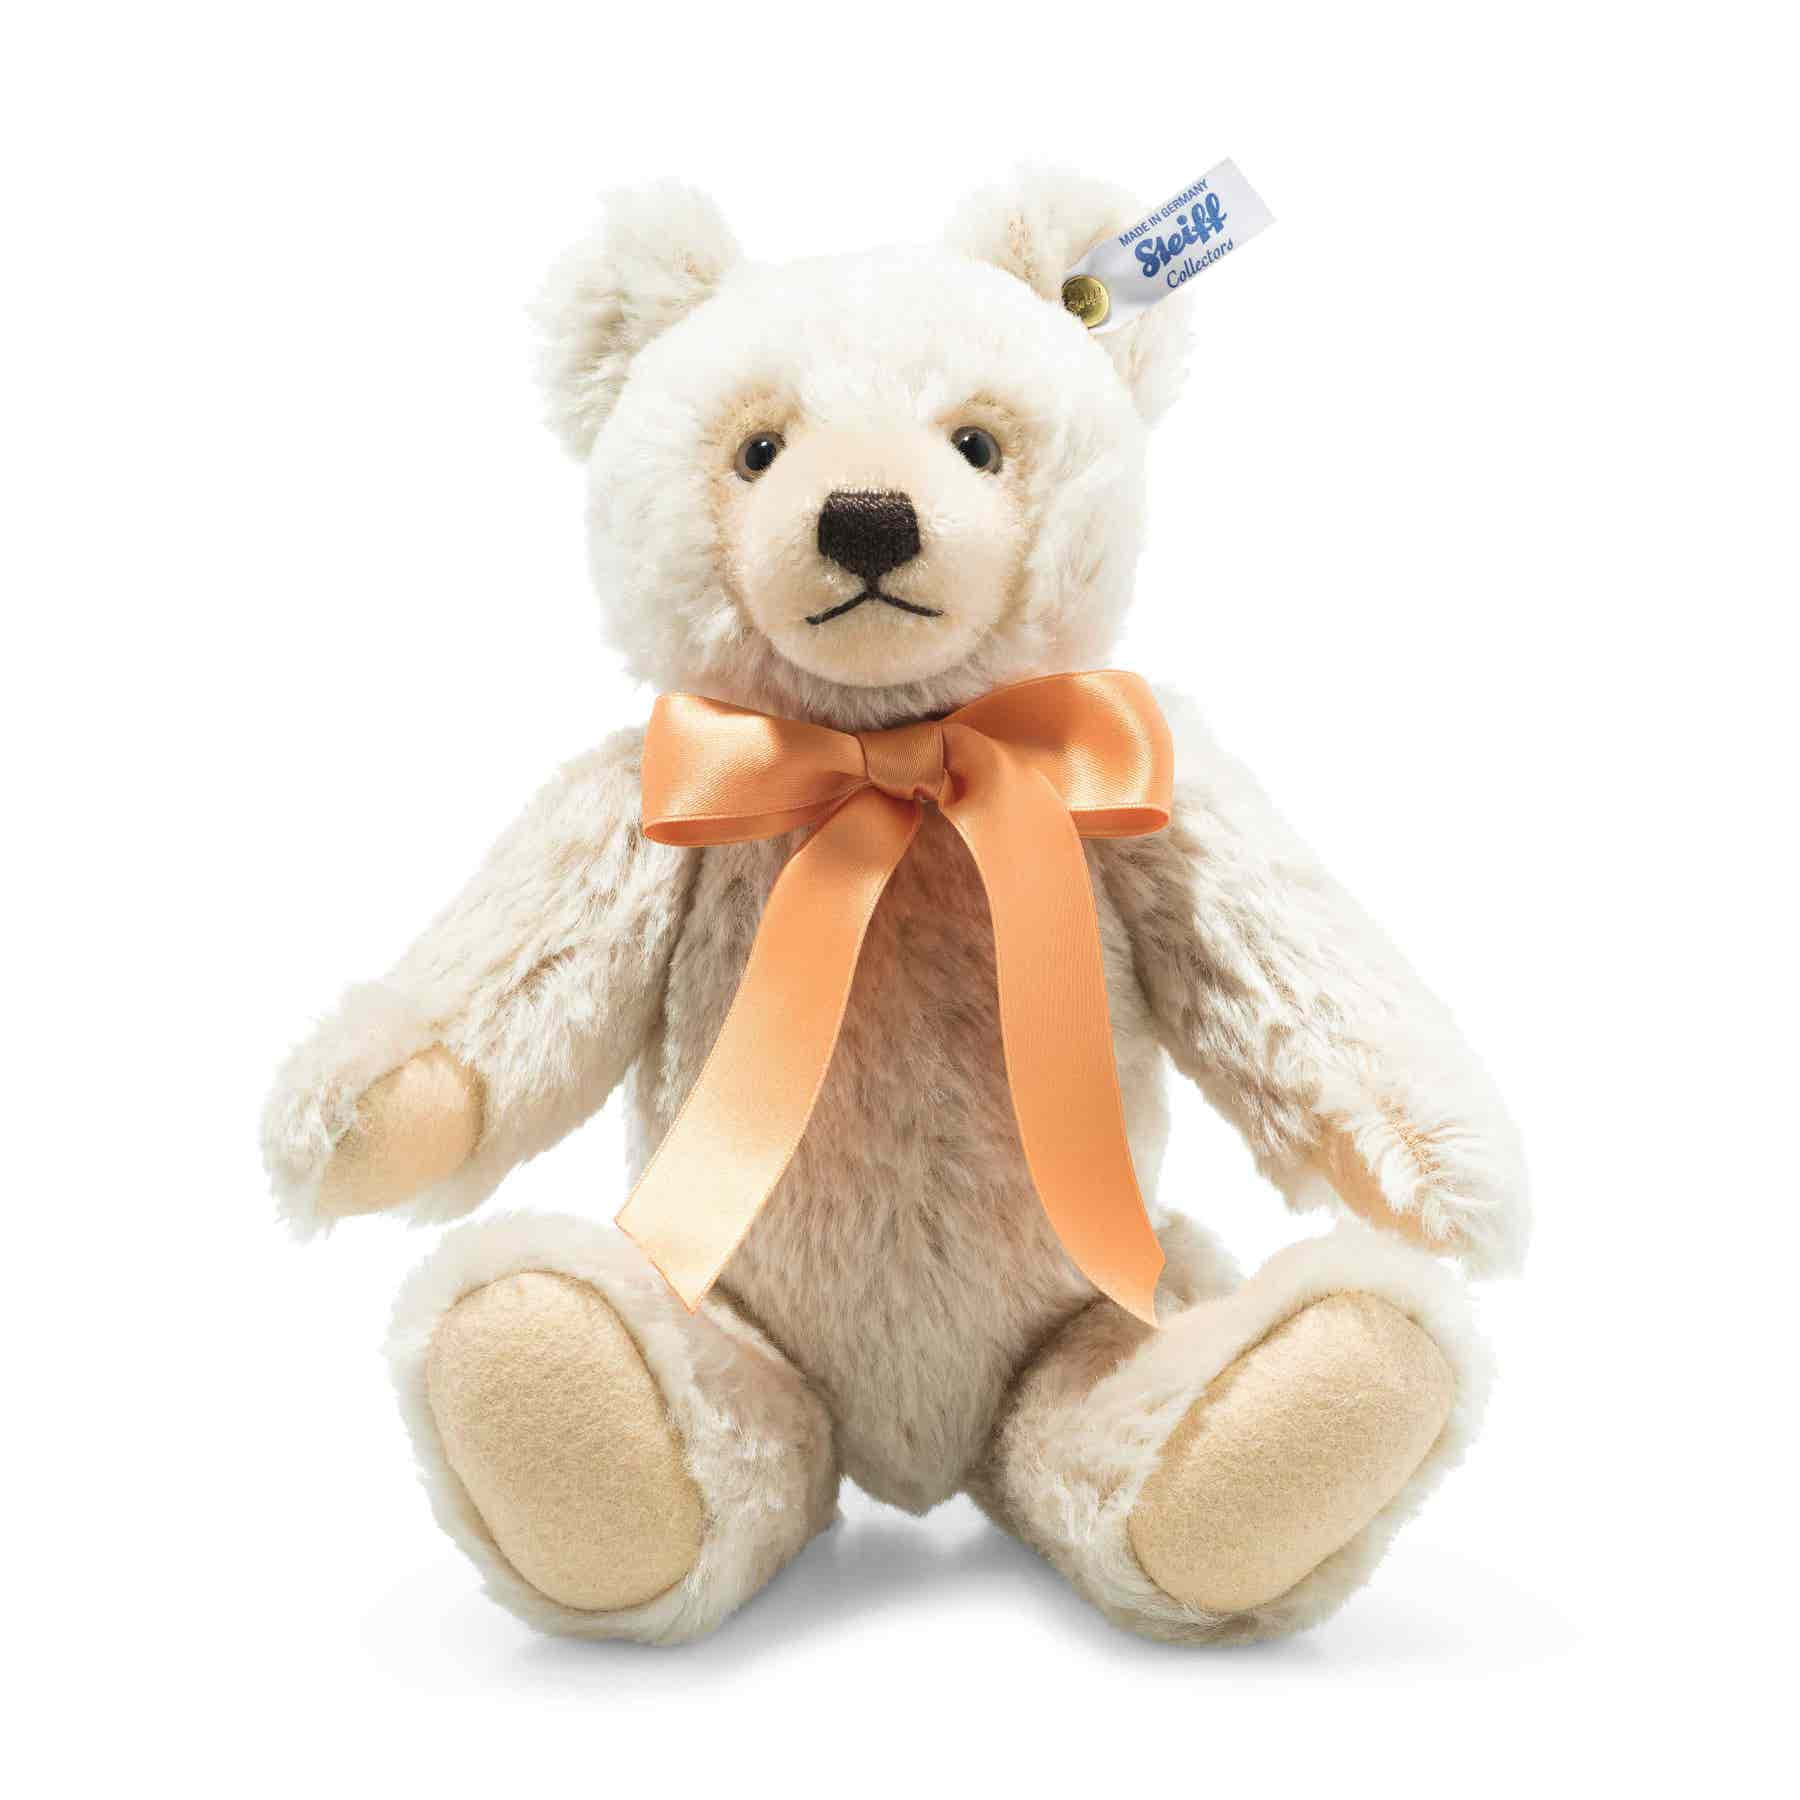 A White Teddy Bear With An Orange Bow